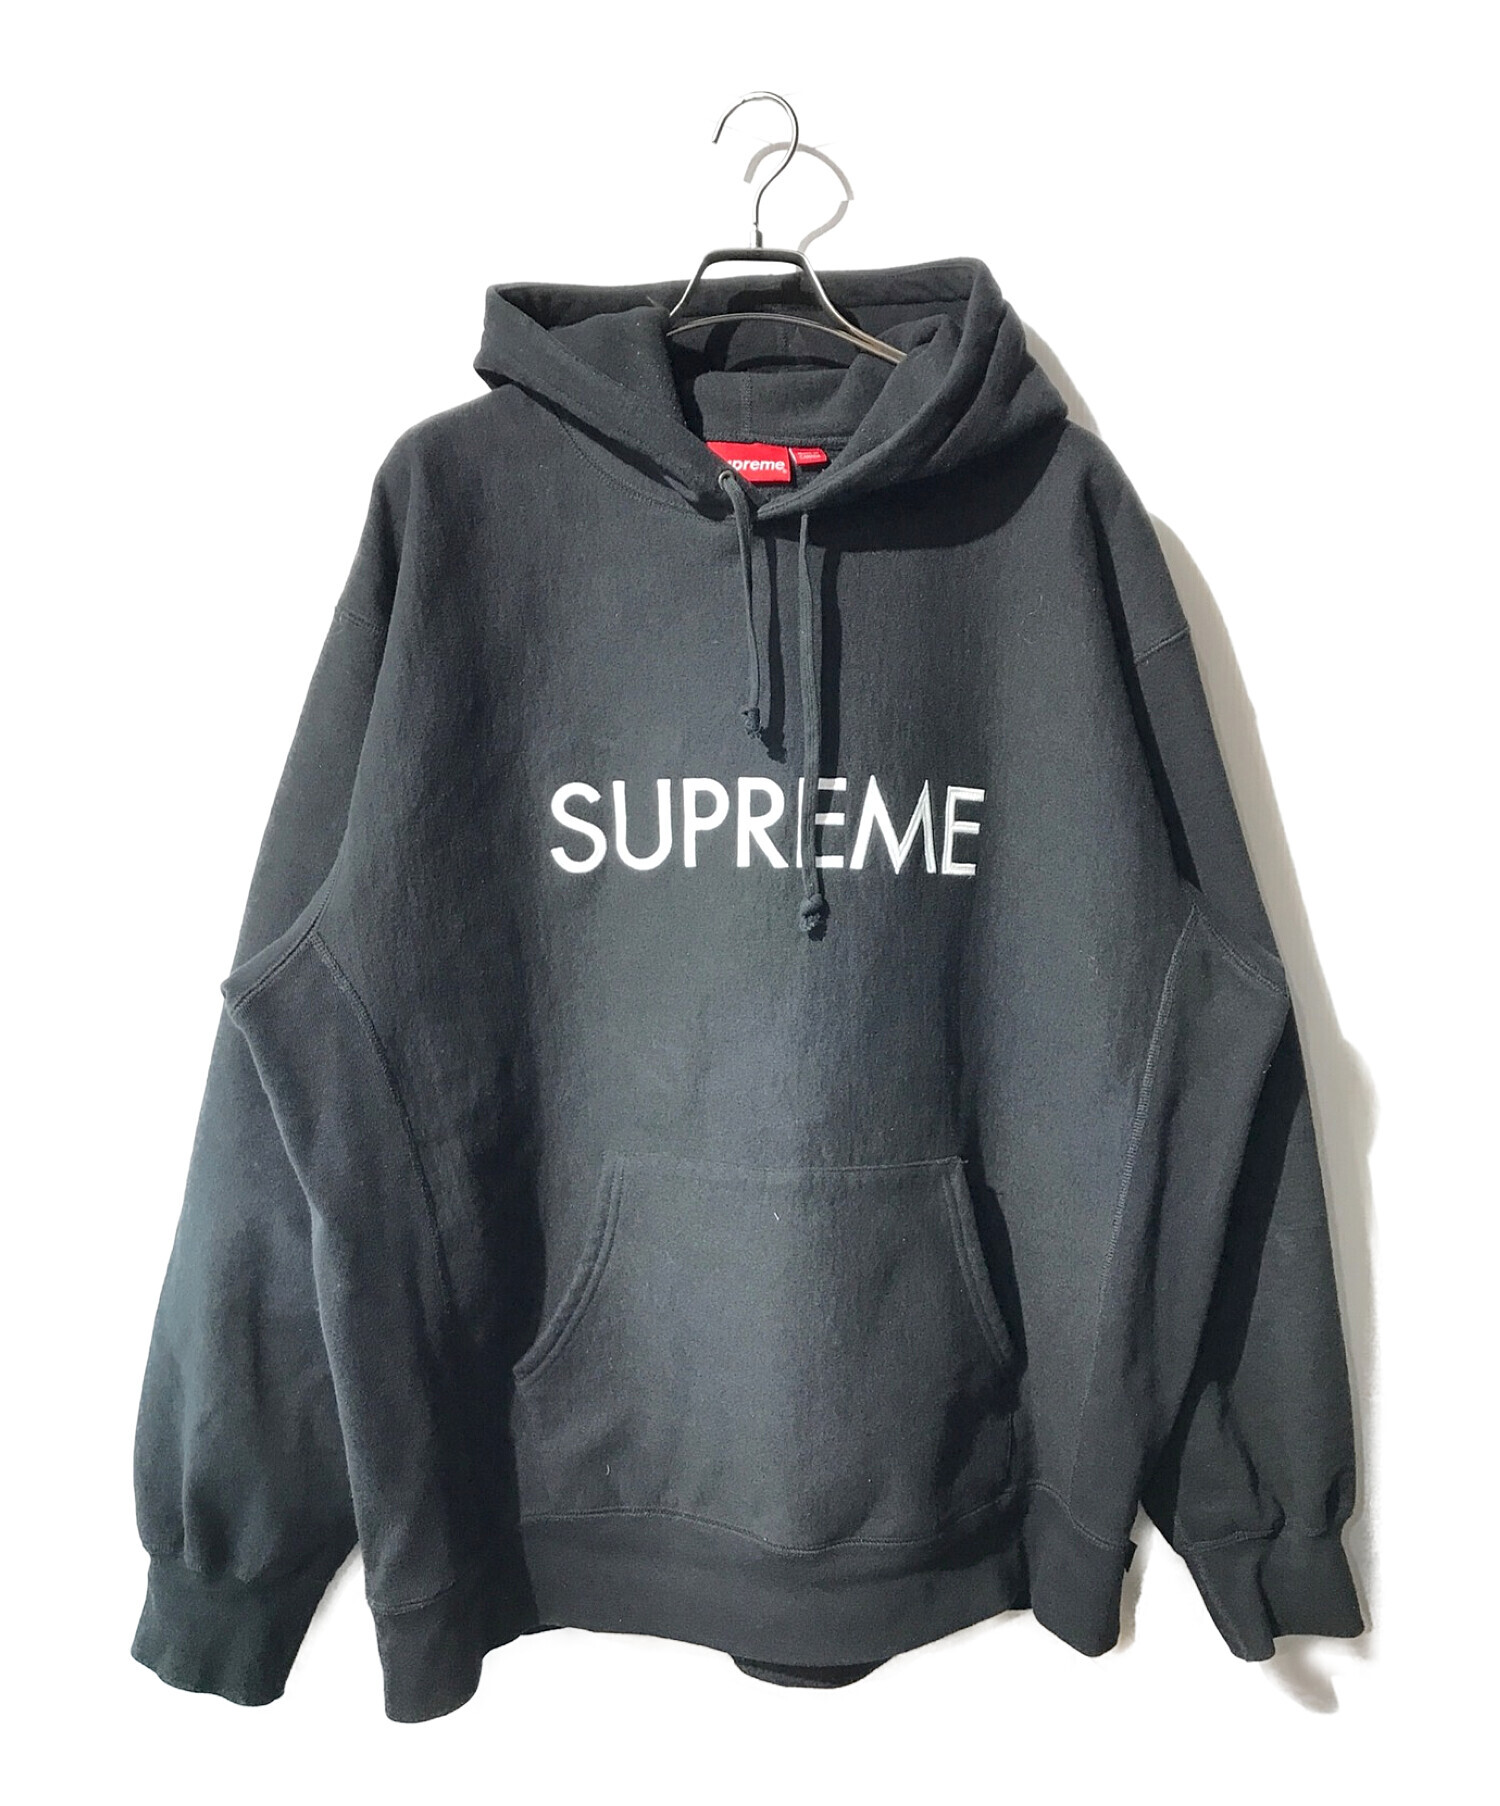 XXL Supreme Capital Hooded Sweatshirt